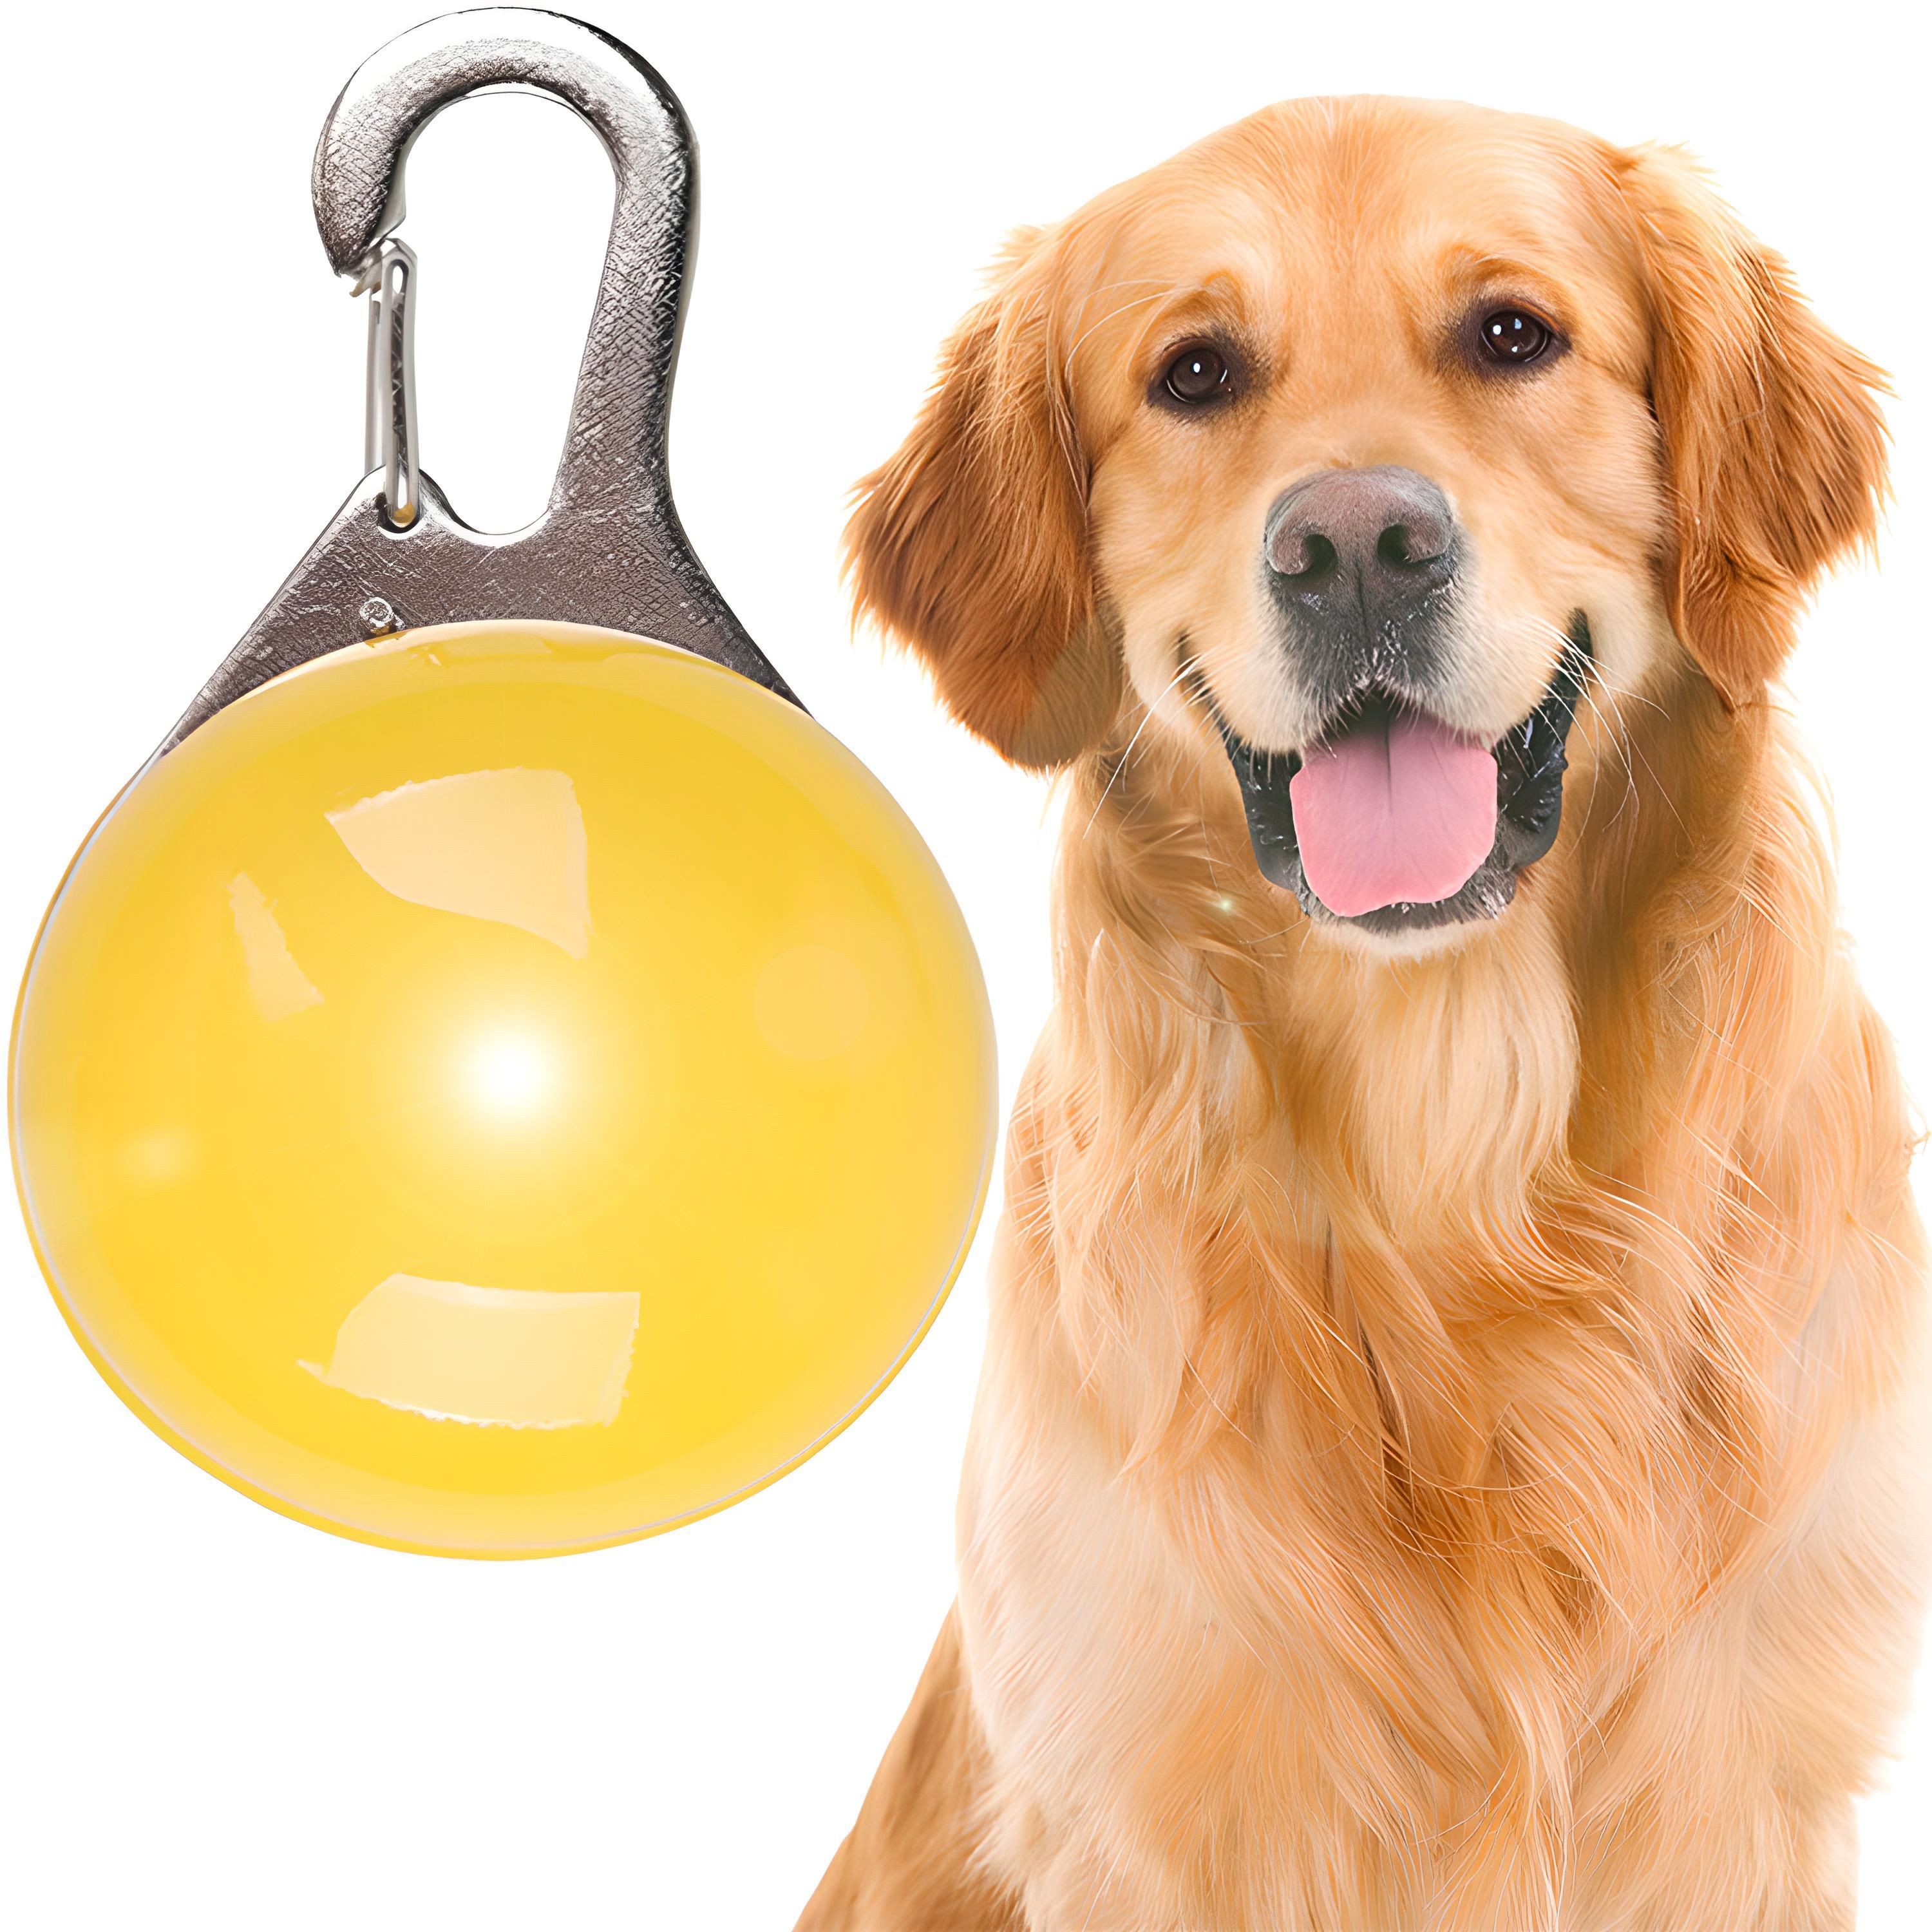 Retoo Hunde-Sicherheitsgeschirr Leuchtanhänger Hunde Leuchthalsband Led Hundehalsband Led Anhänger, Einfach zu bedienen, Verbessert die Sichtbarkeit Ihres Haustiers